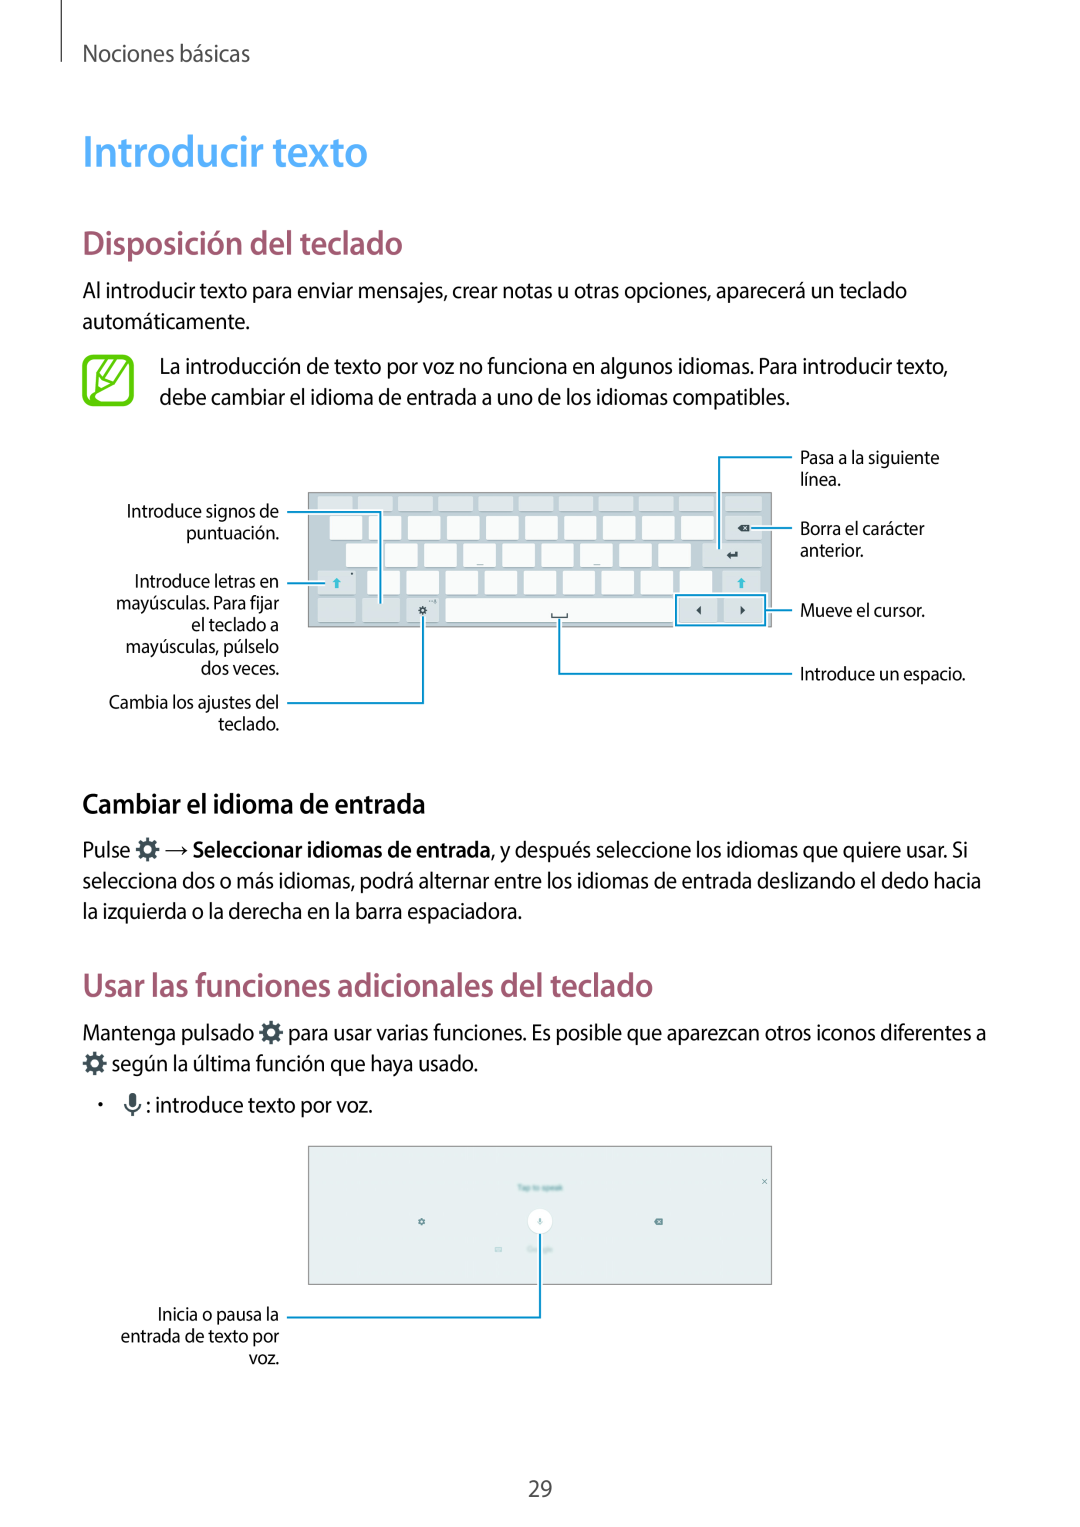 Samsung SM-T800NZWAPHE manual Introducir texto, Disposición del teclado, Usar las funciones adicionales del teclado 